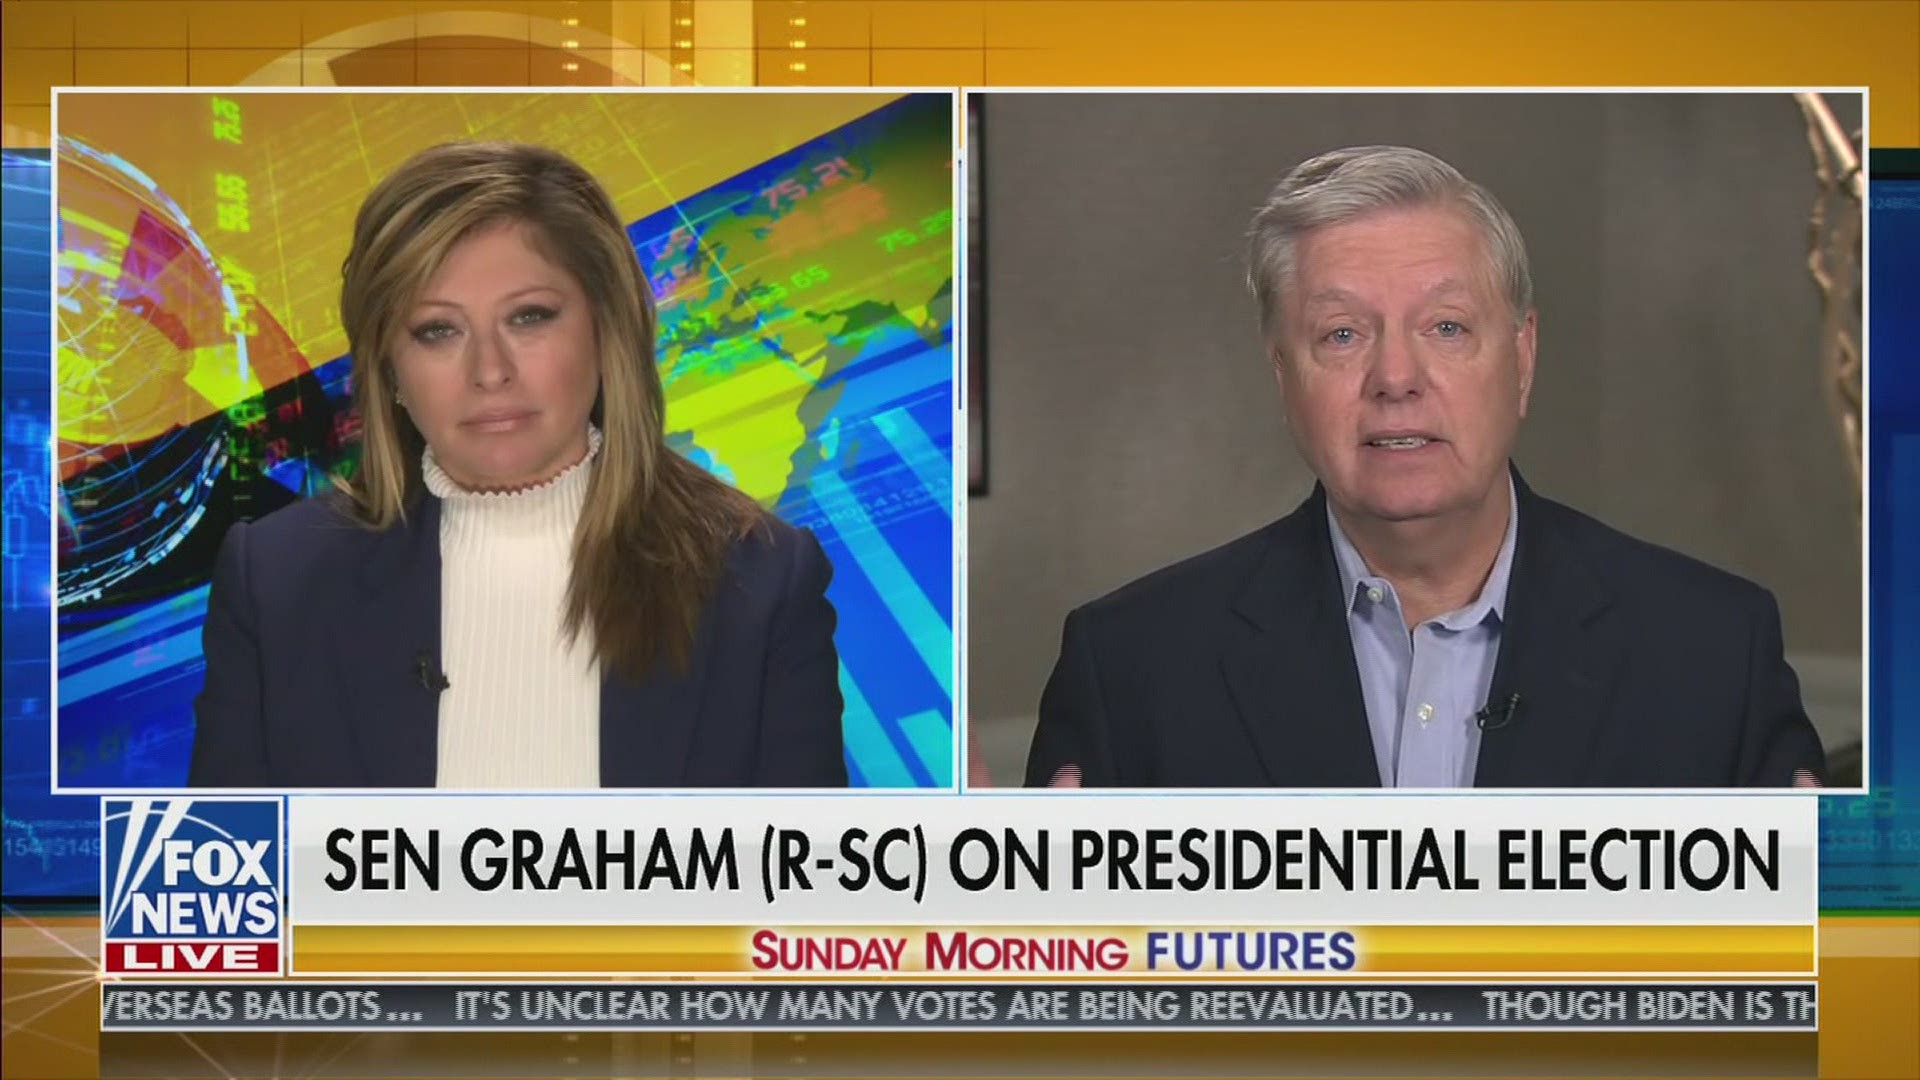 Sen. Graham appeared on Fox News Sunday morning.